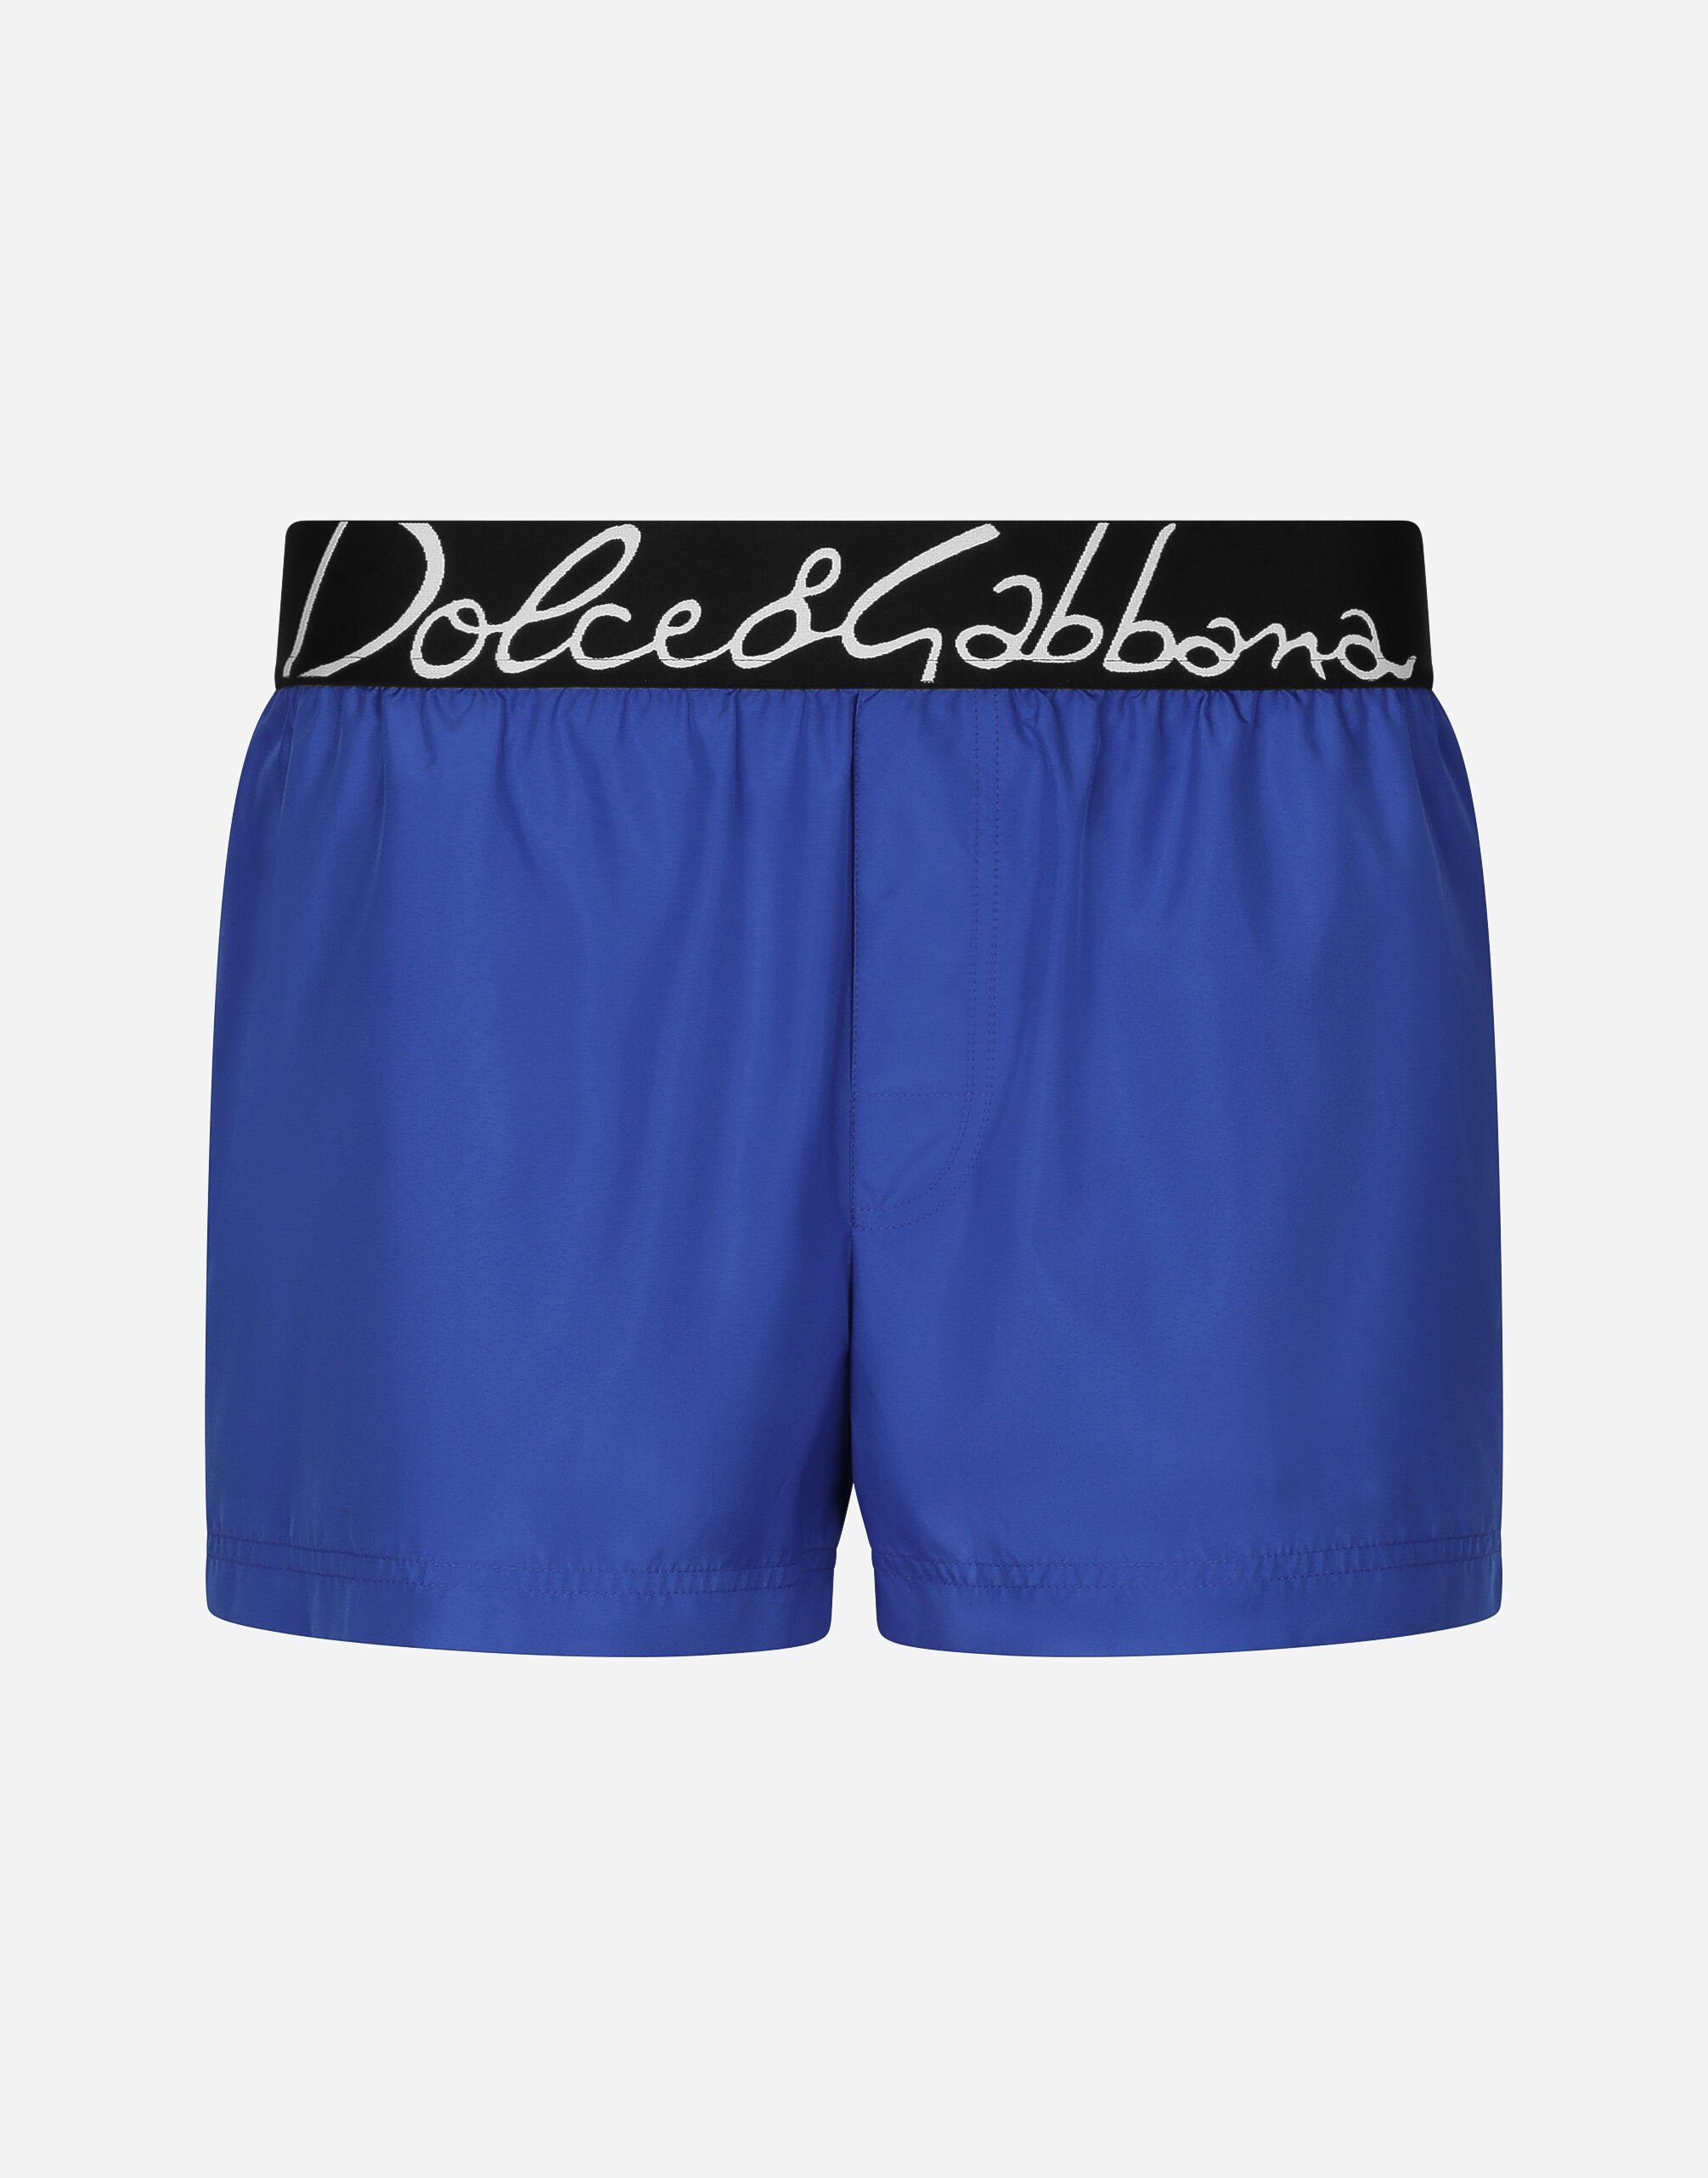 Dolce & Gabbana Короткие пляжные боксеры с логотипом Dolce&Gabbana принт M4E68TISMF5